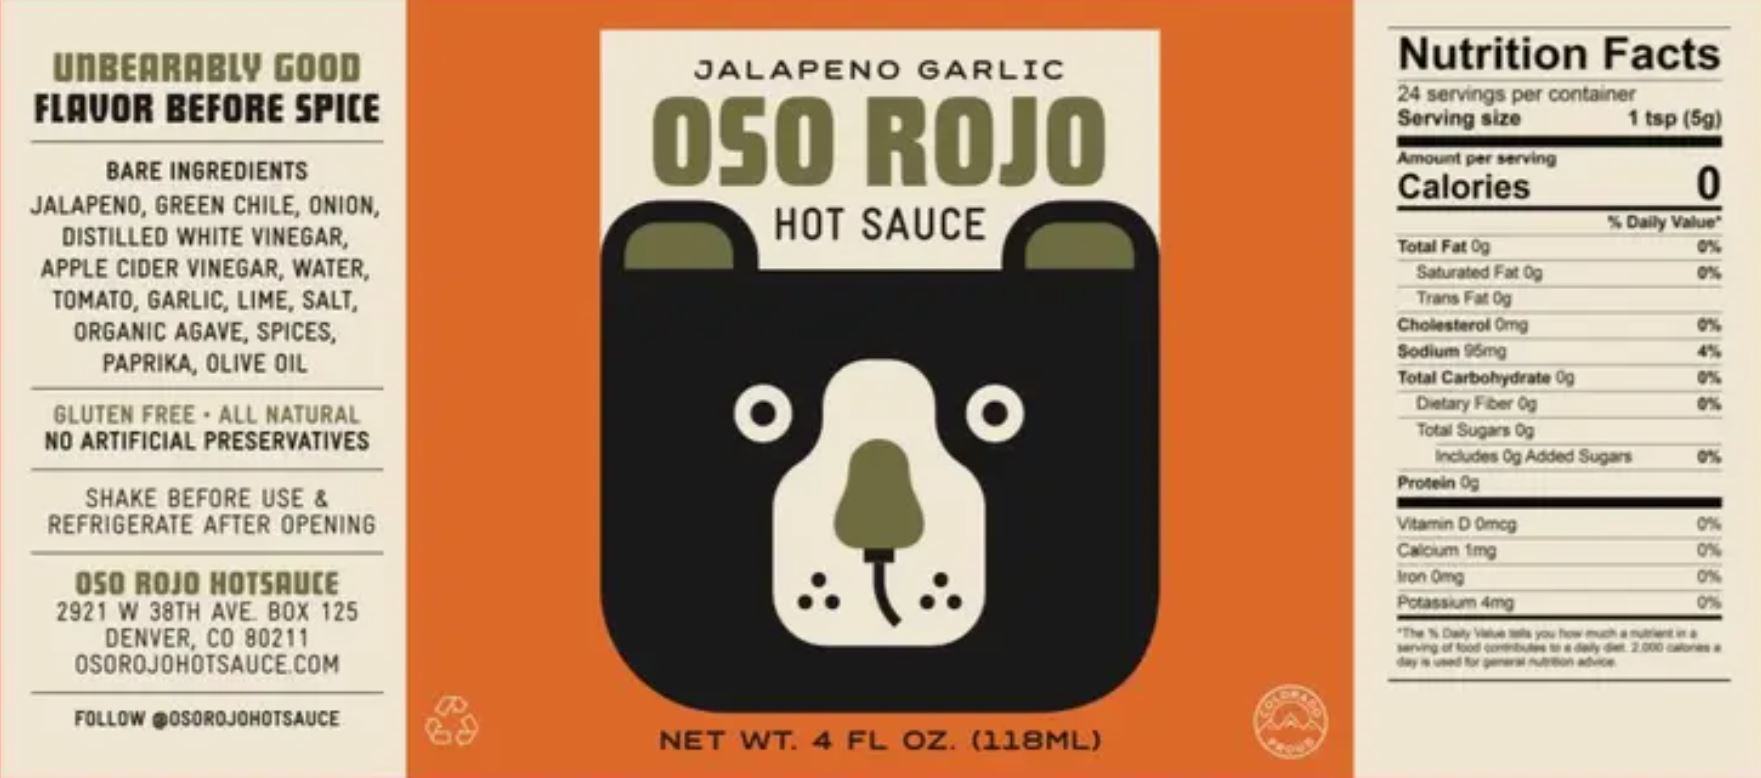 Jalapeno Garlic Hot Sauce